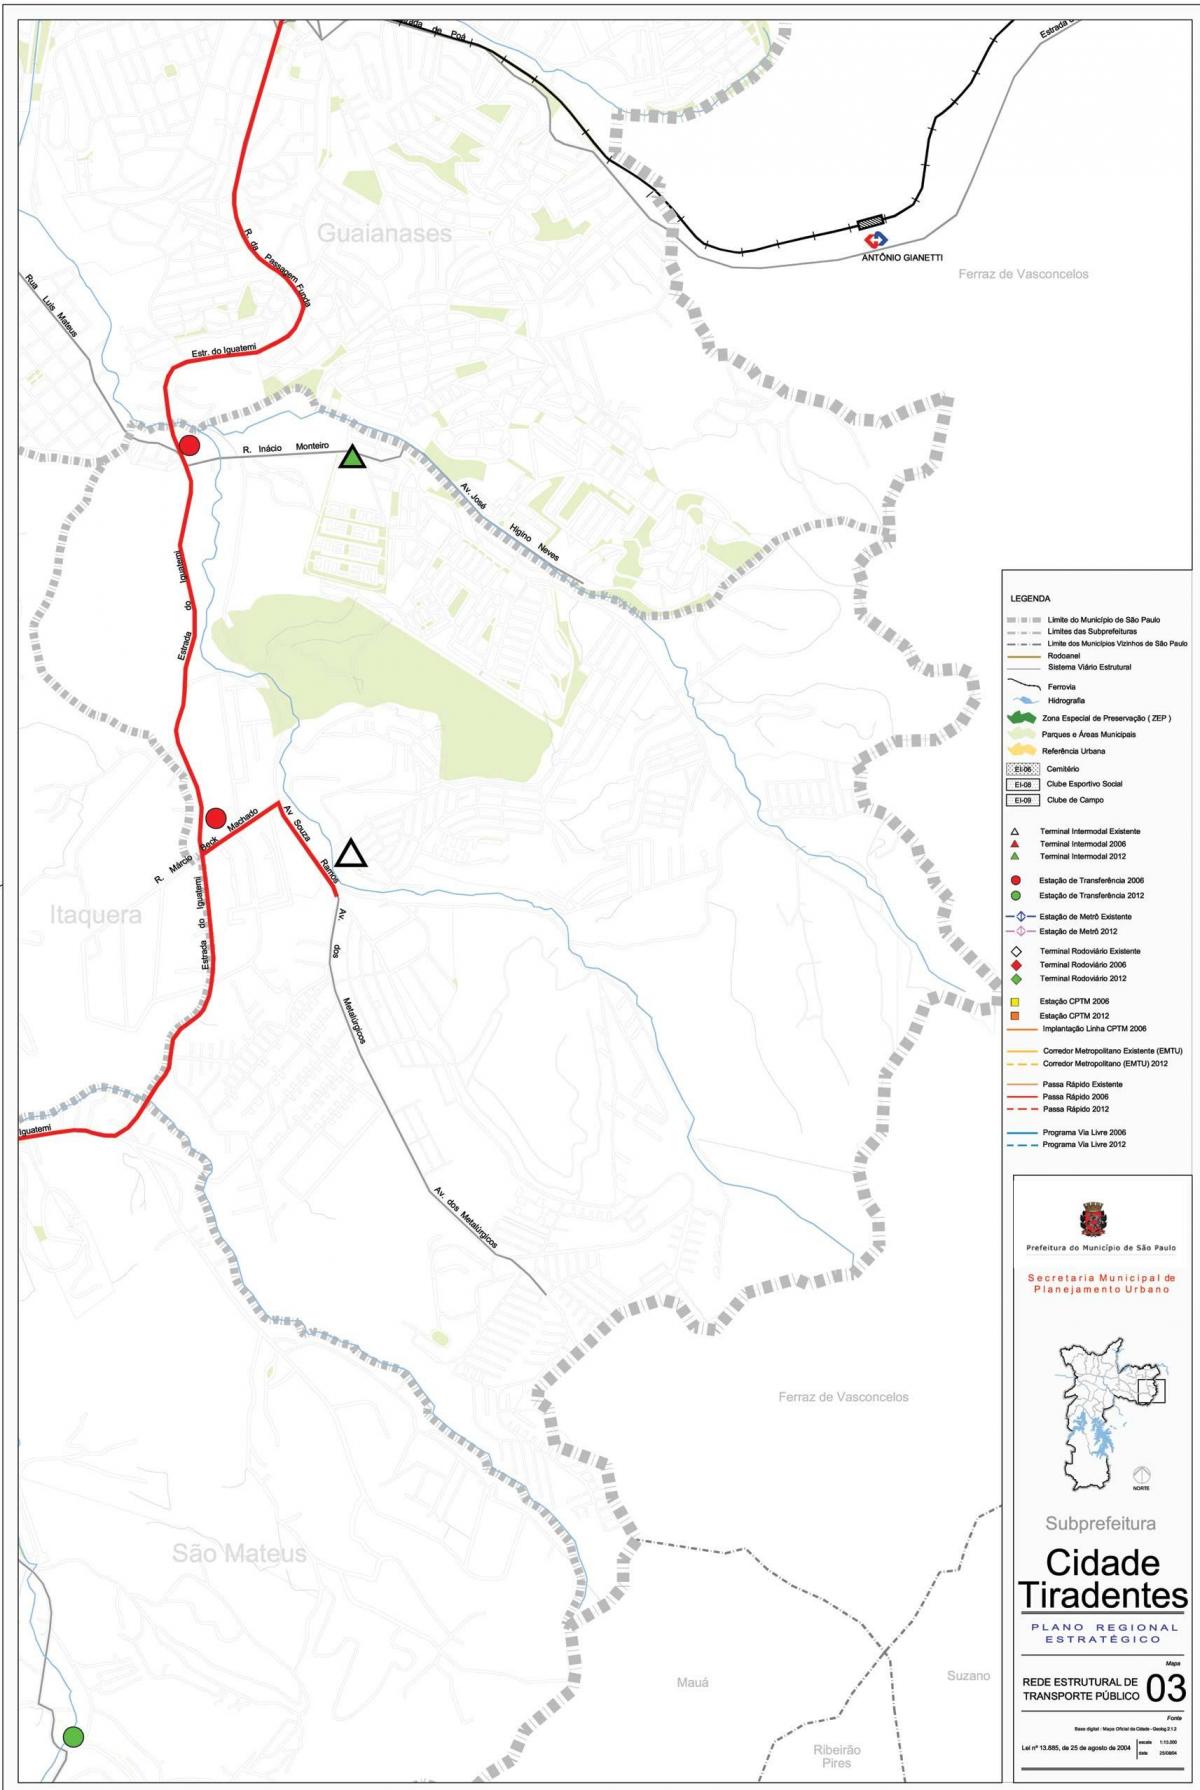 Карта Сидаде Тирадентесе Сан-Паўлу - грамадскі транспарт